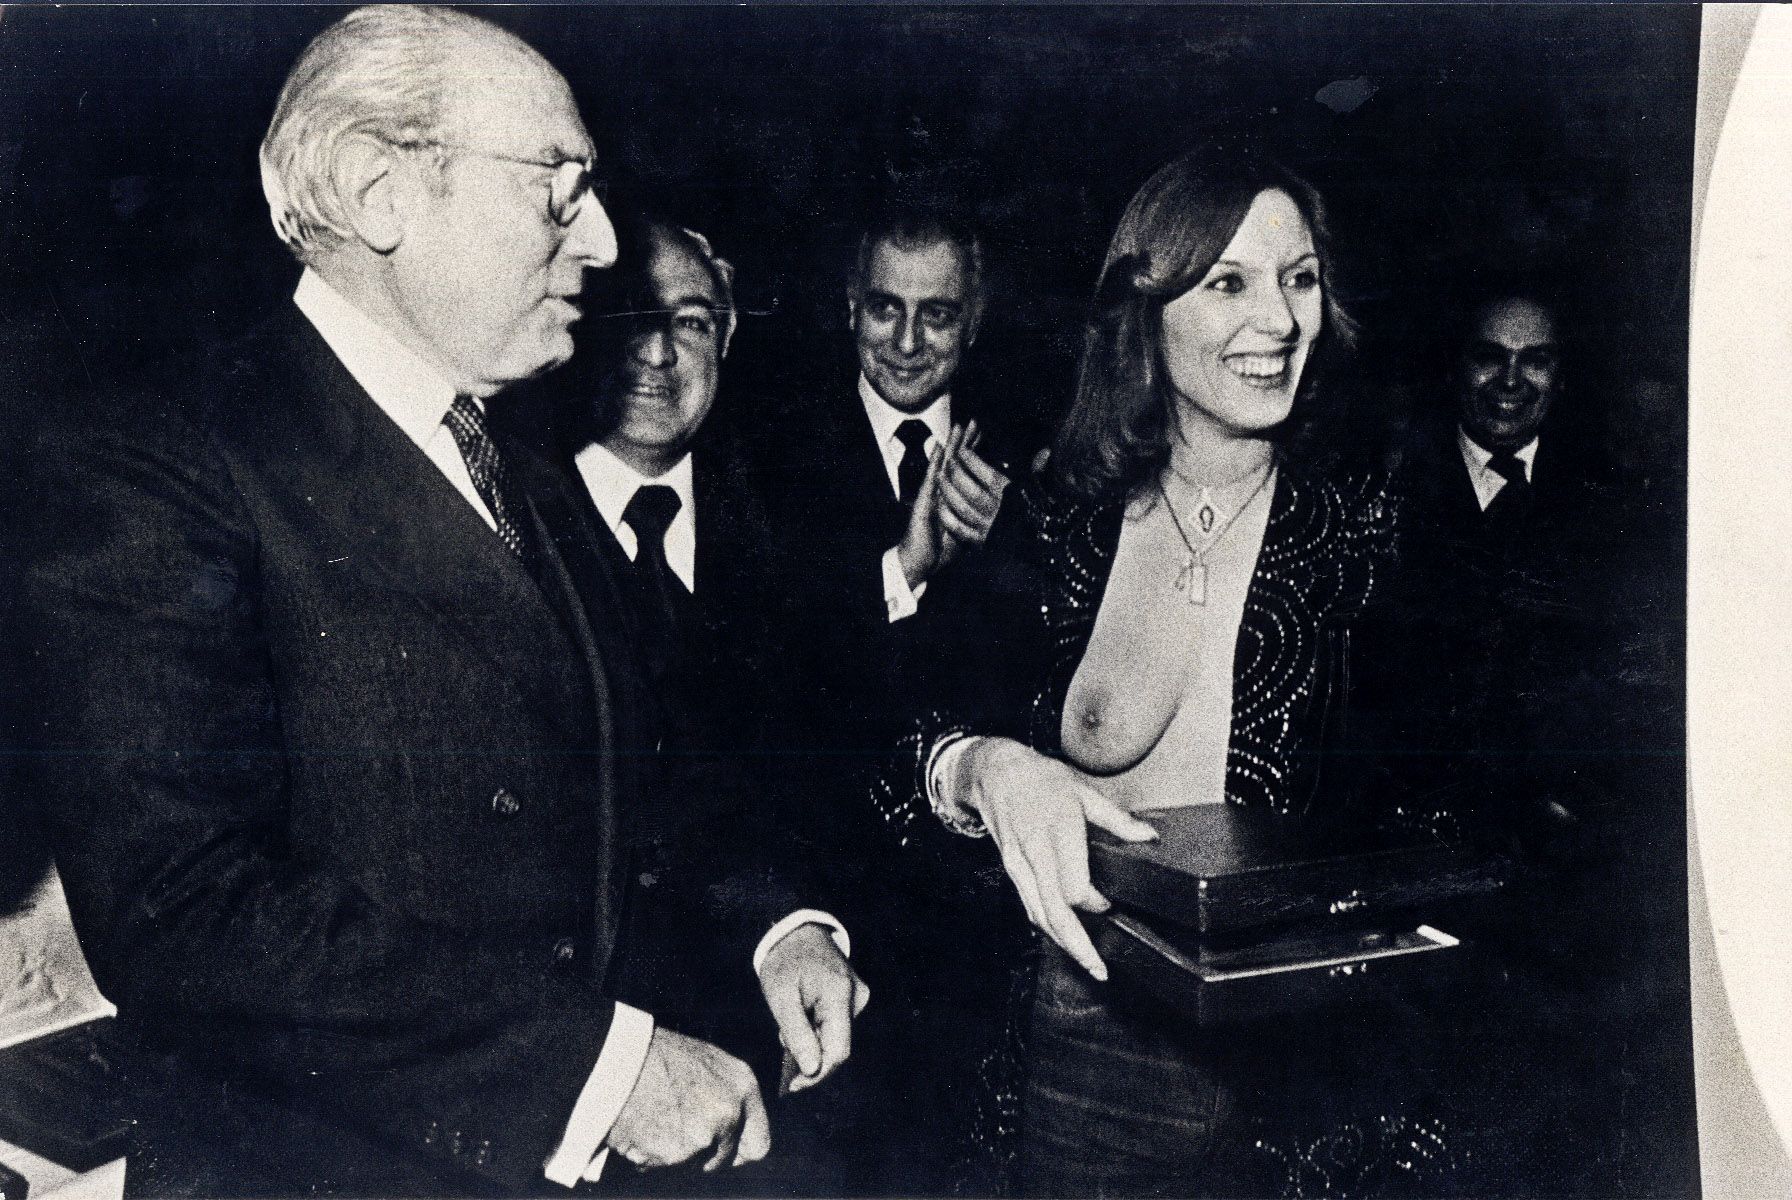 El exalcalde de Madrid, Tierno Galván, en una imagen de archivo junto a la vedette Susana Estrada